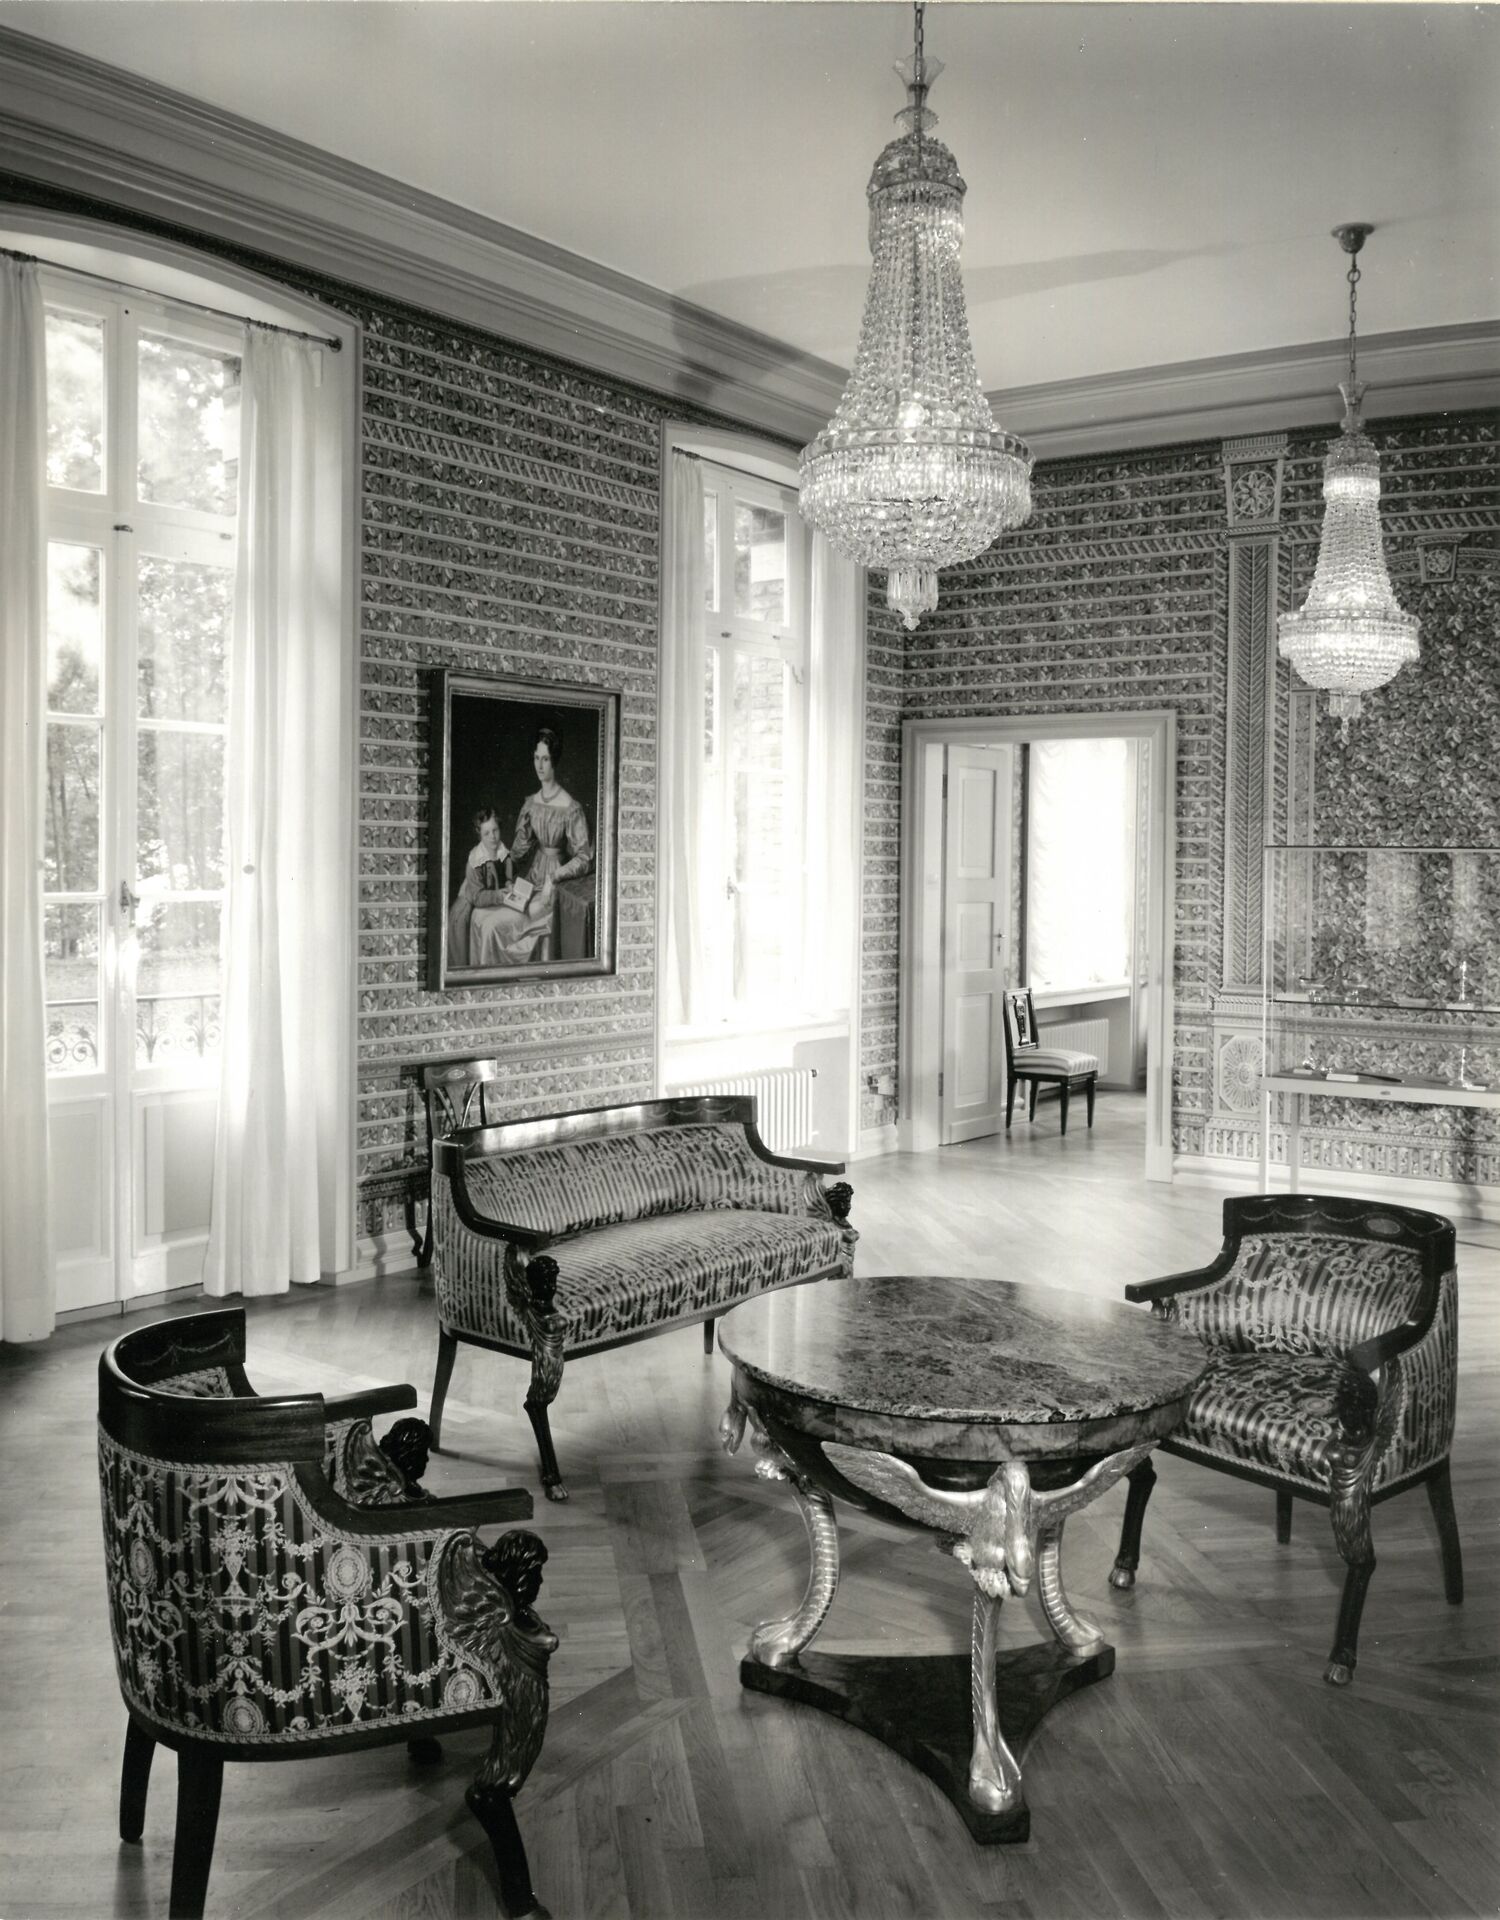 Ausstellung Stadtmuseum -Gartensaal mit rekonstruierter Treillage-Tapete es ausgehenden 18. Jh. SK 10170.jpg